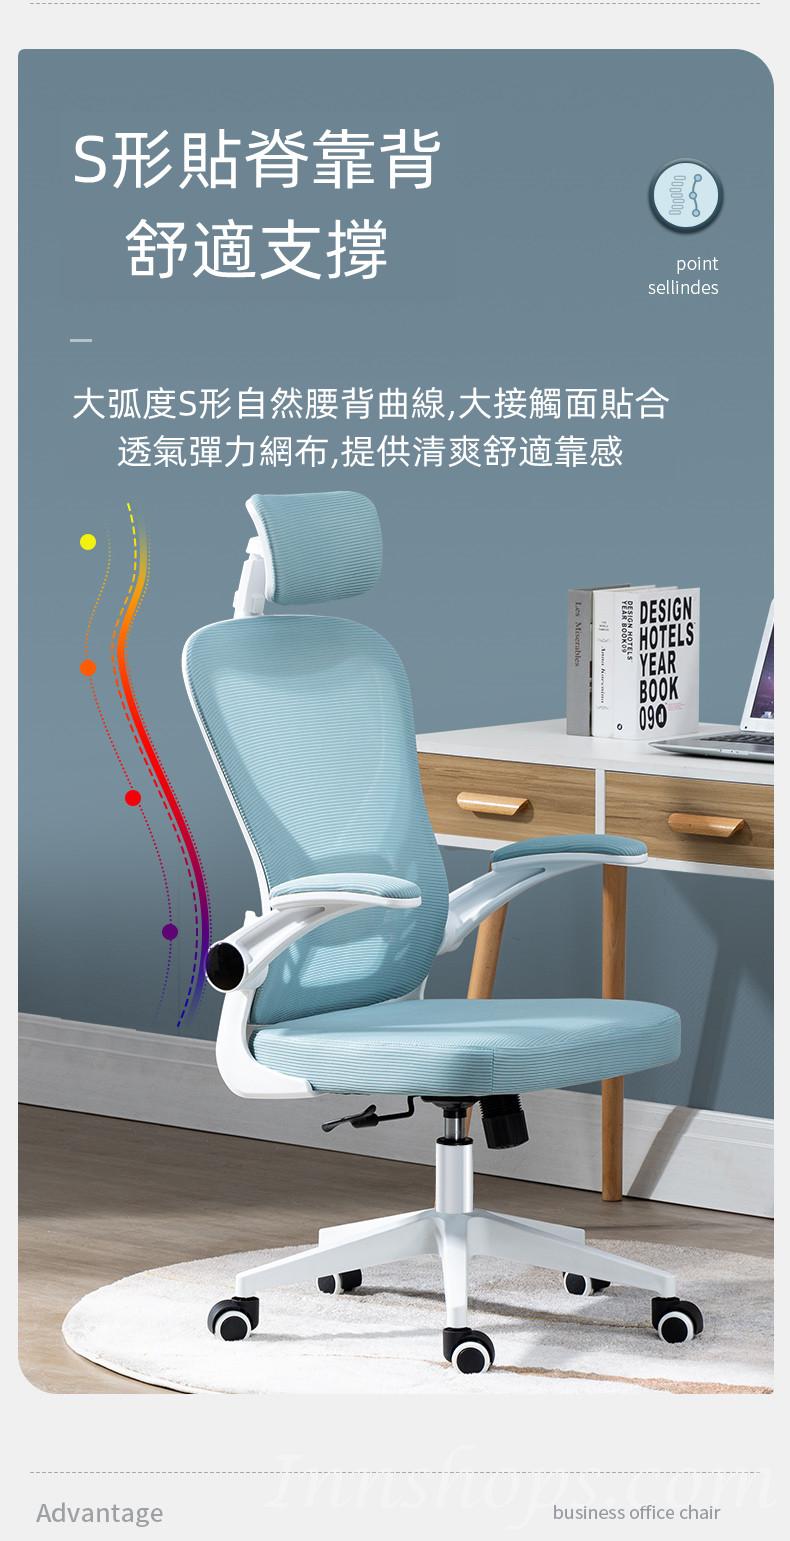 人體工學辦公椅 電腦椅 家用學生學習轉椅 宿舍靠背舒適久坐書桌椅子(IS8036)